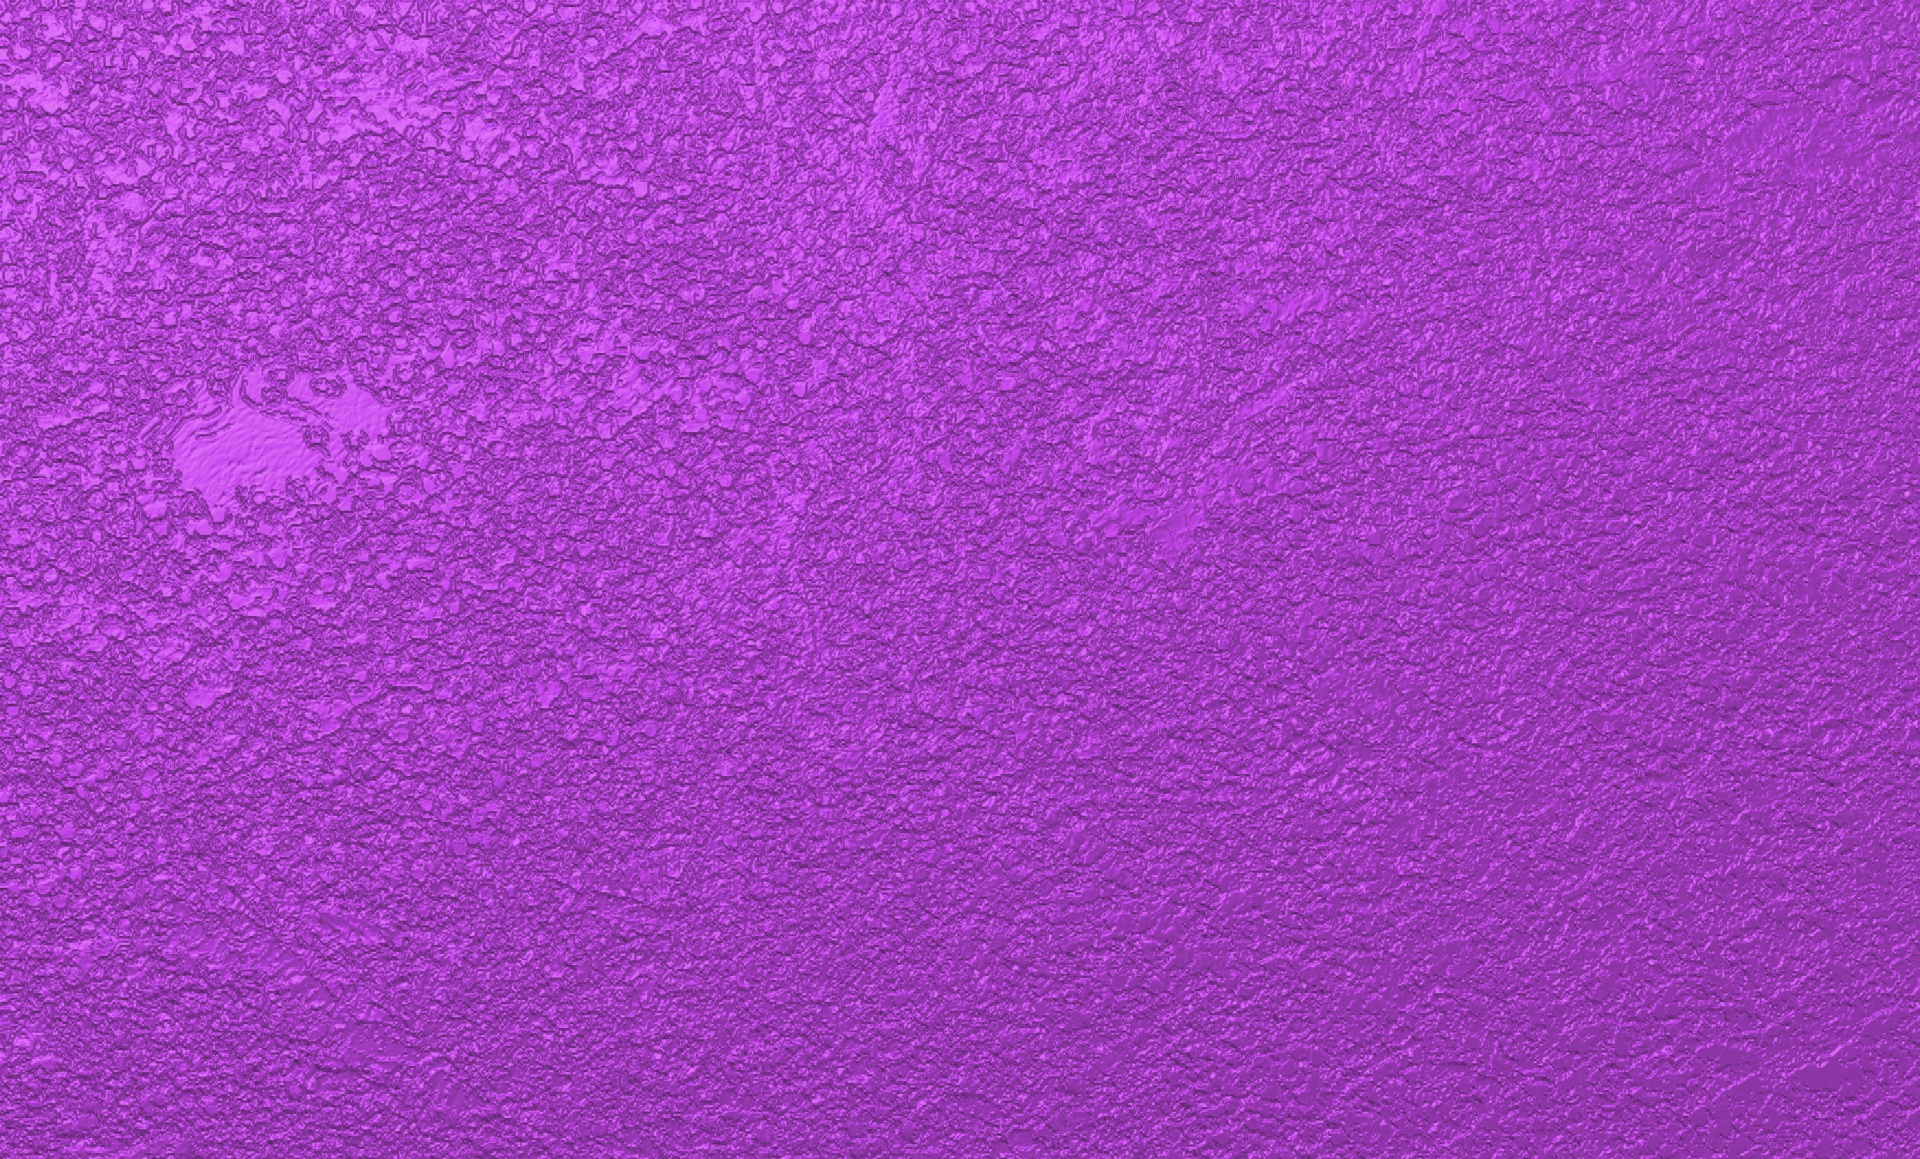 Rough Textured Purple Background